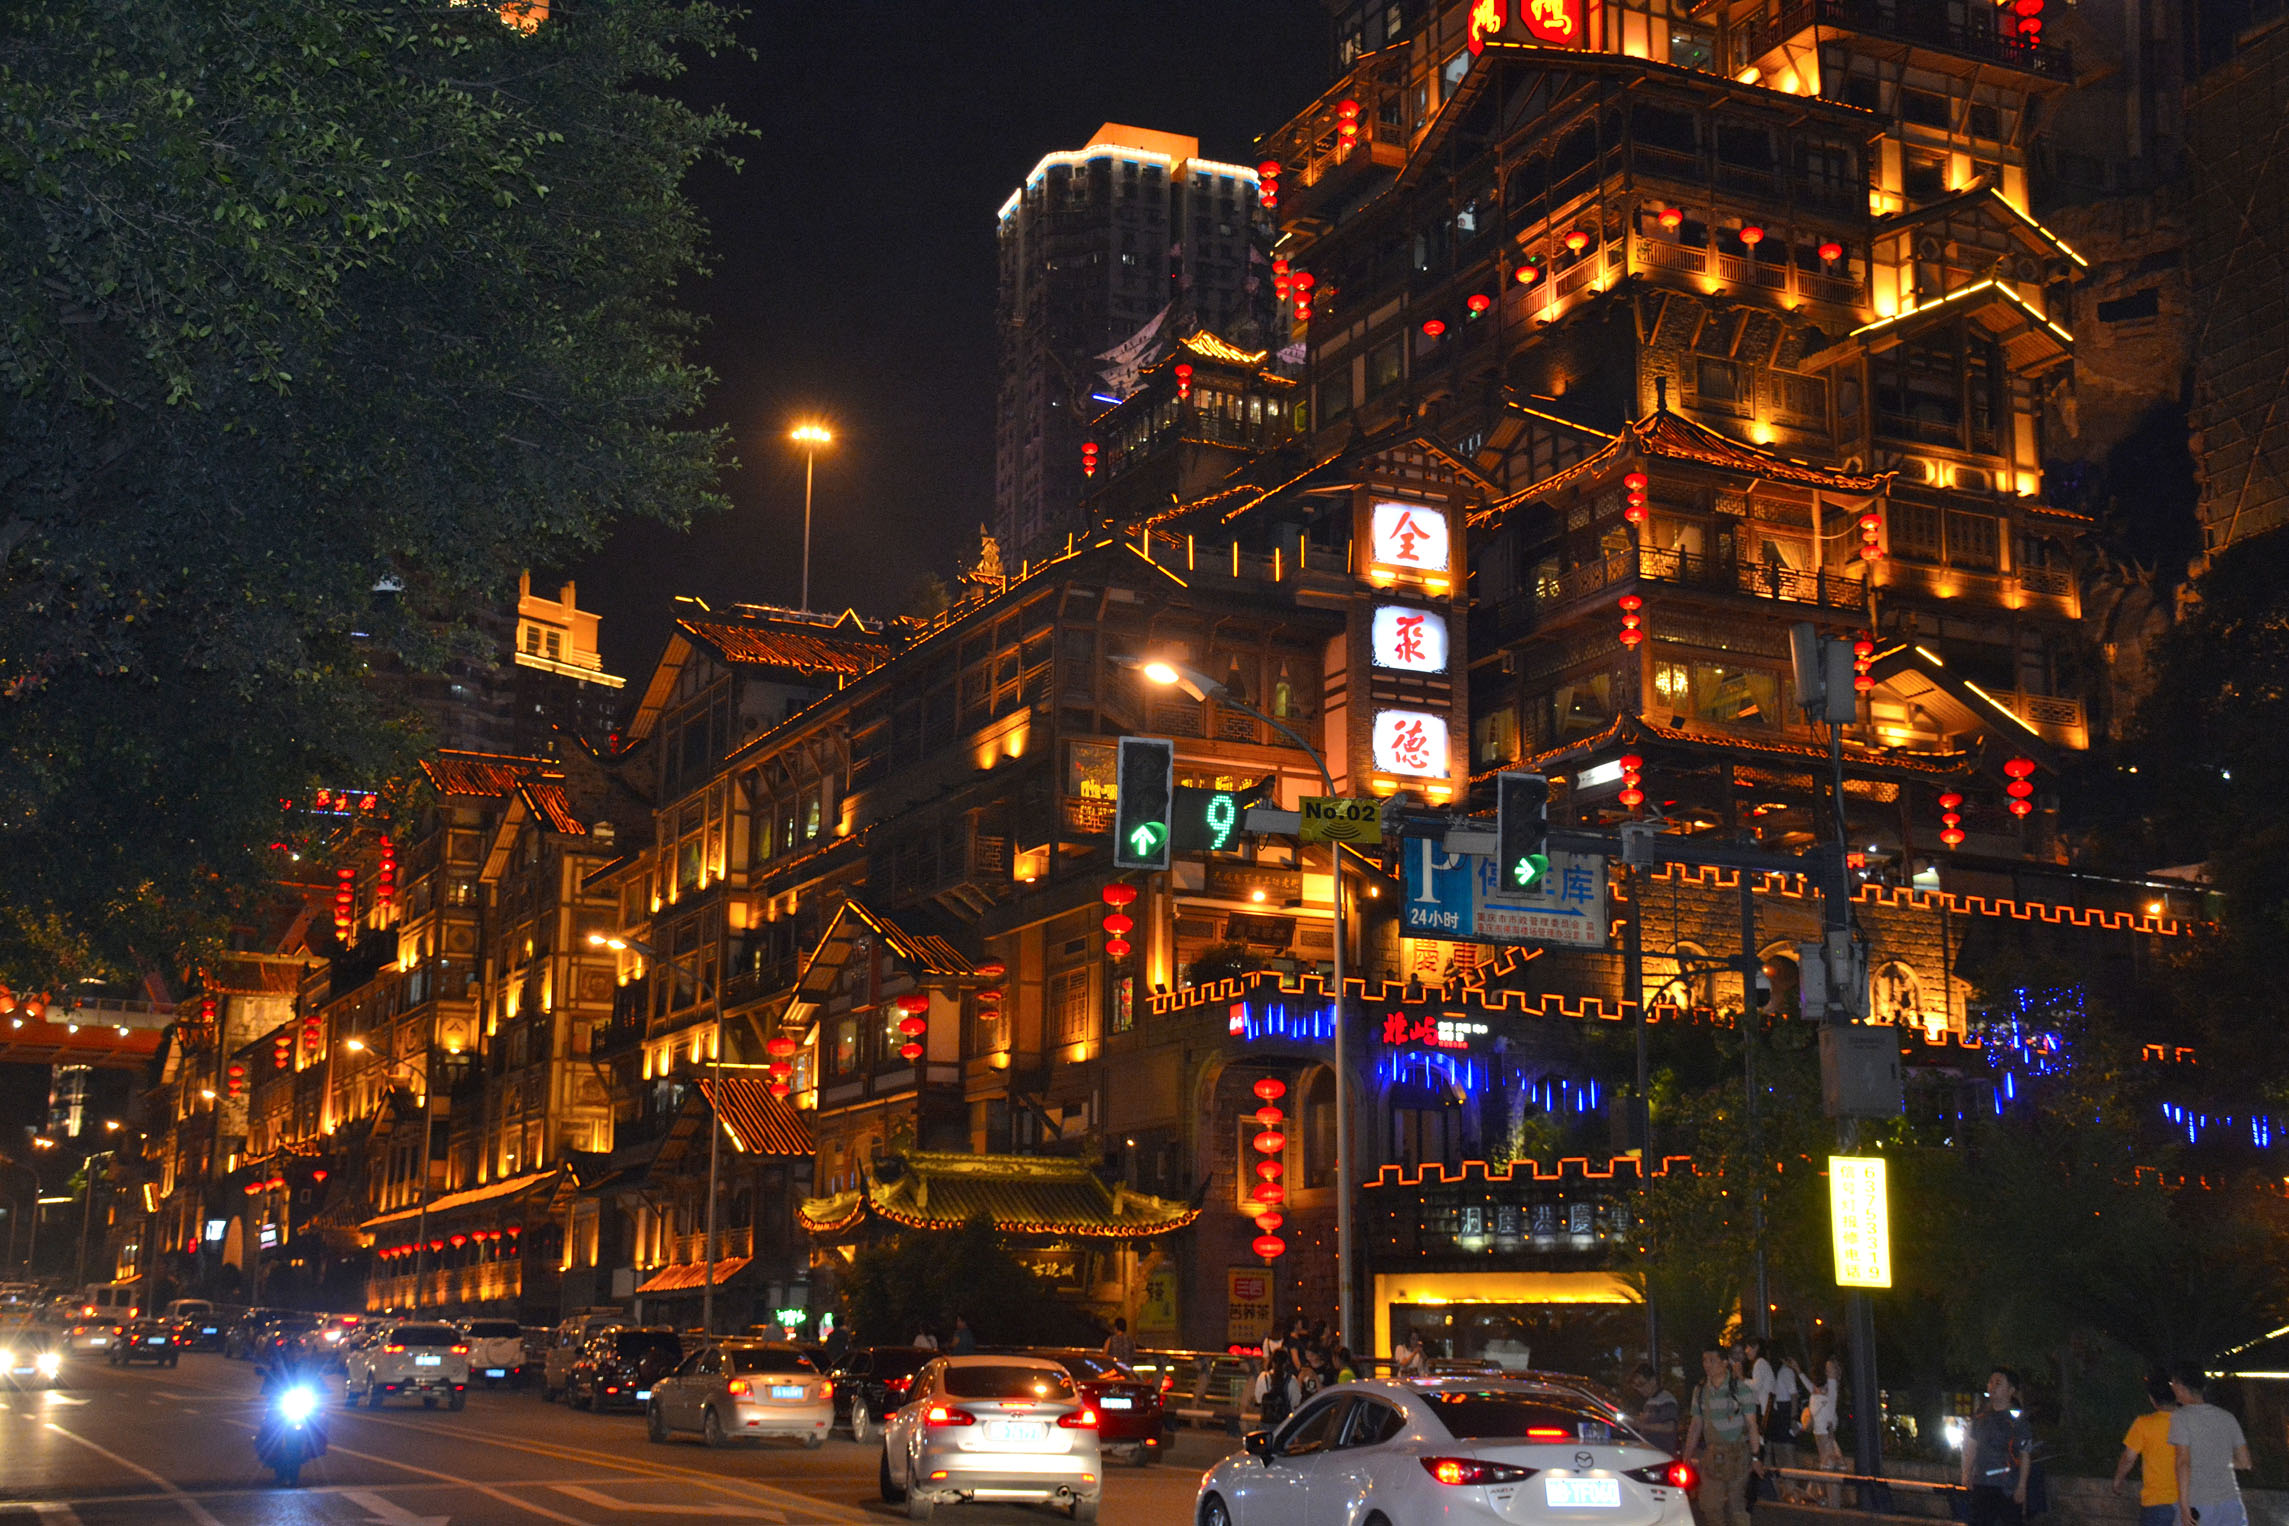 Chongqing Travel Guide